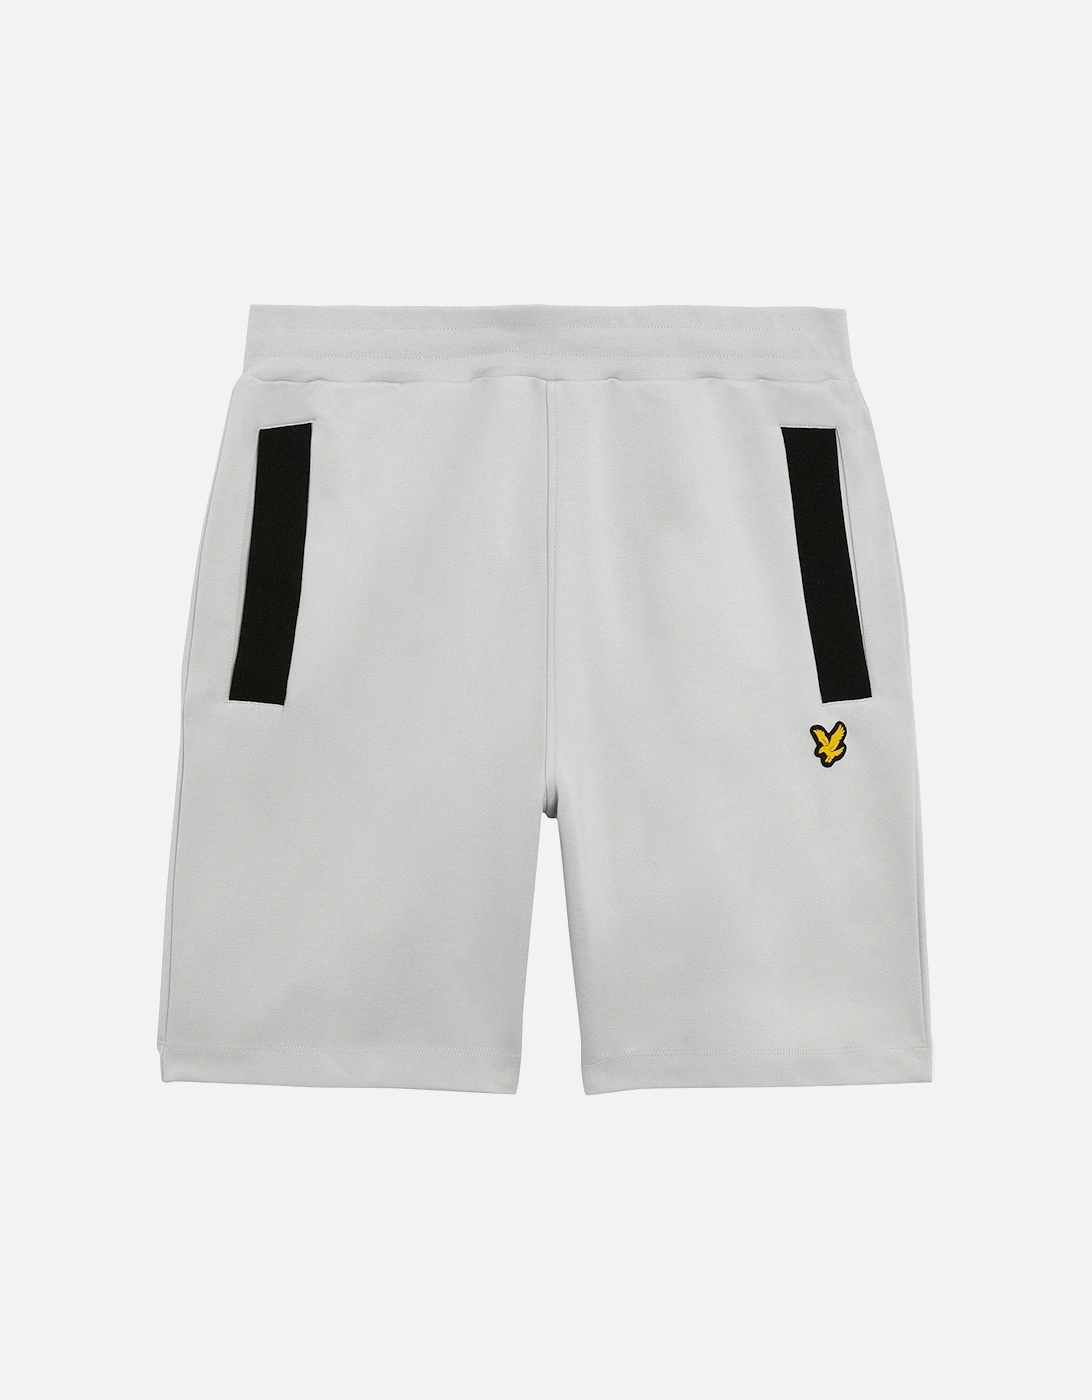 Sports Pocket Branded Shorts